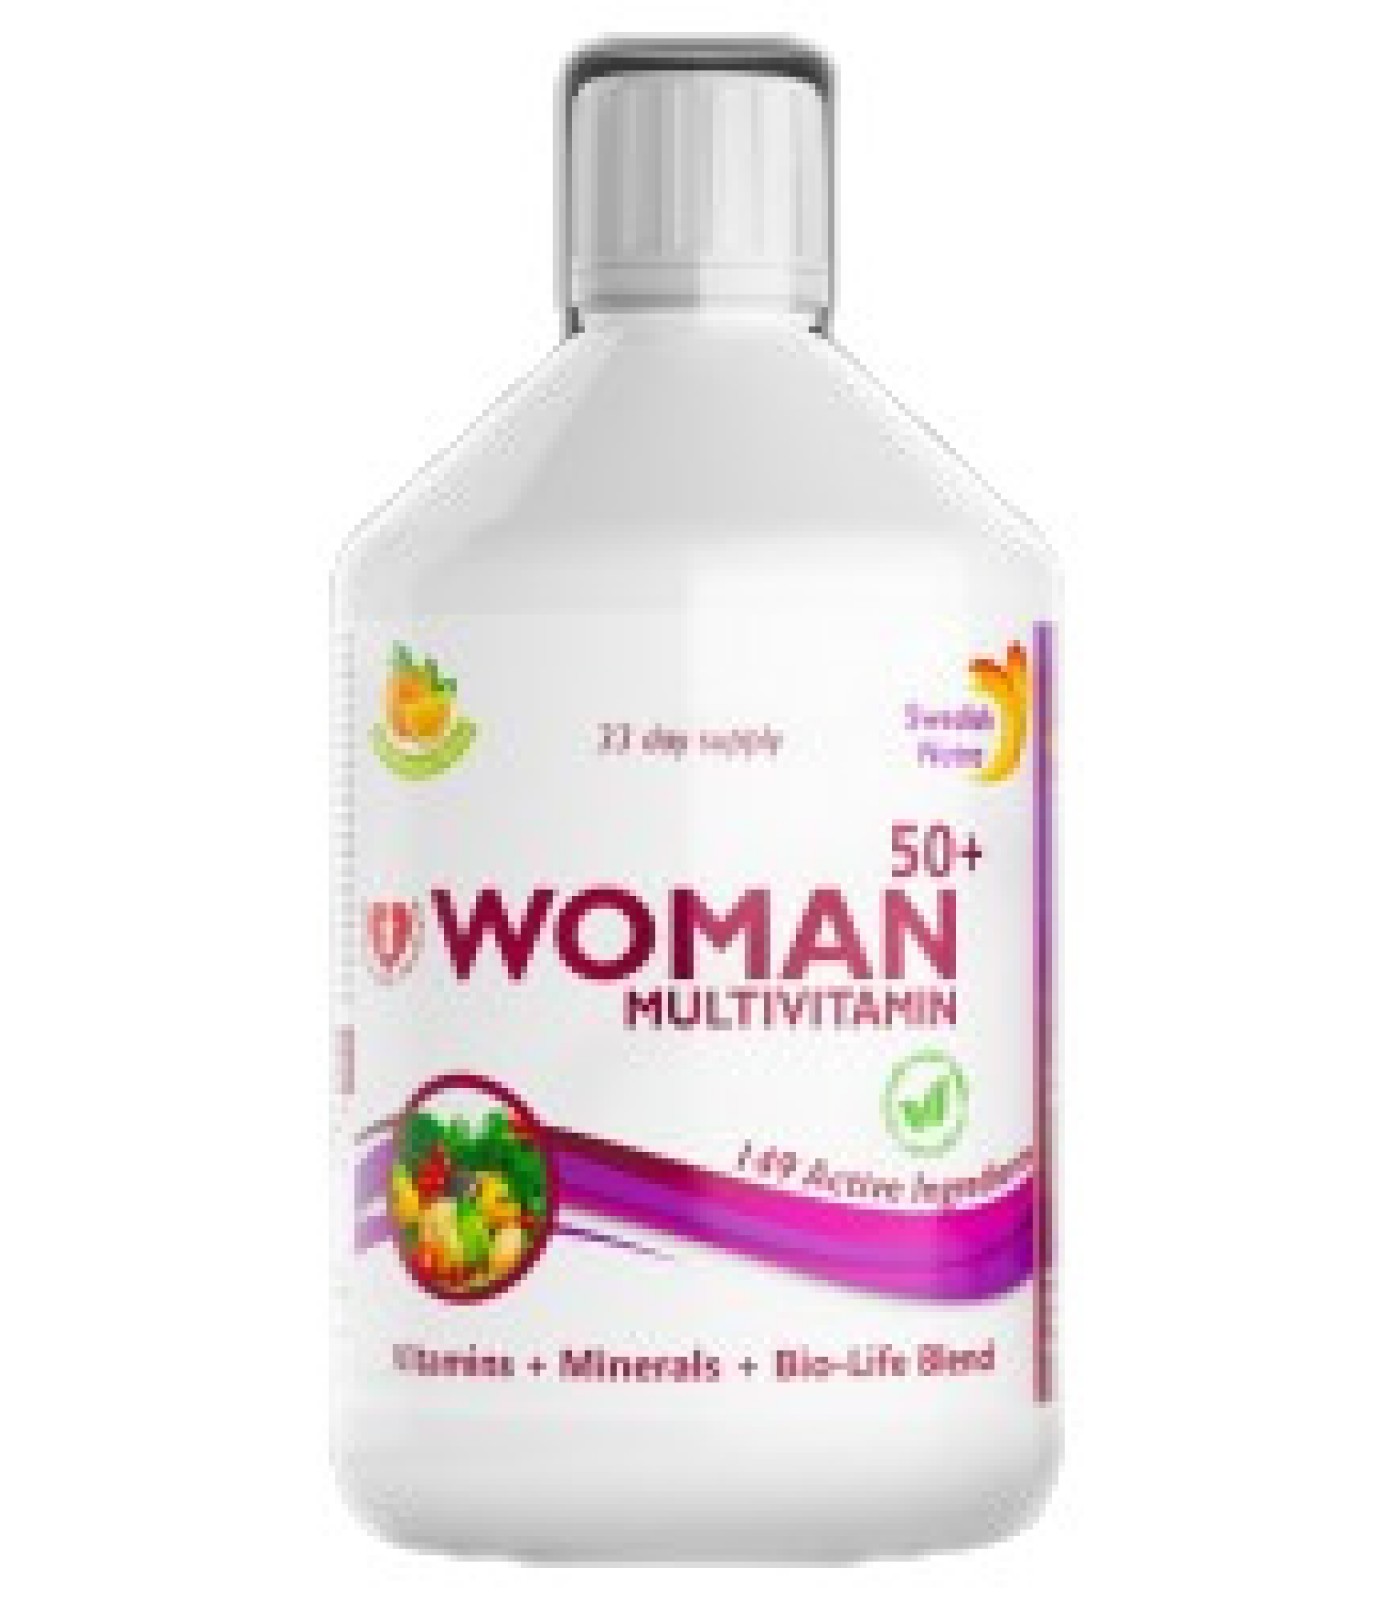 Swedish Nutra - Woman Multivitamin 50+ | Vitamins + Minerals + Bilo-Life Blend / 500 мл, 33 дози​